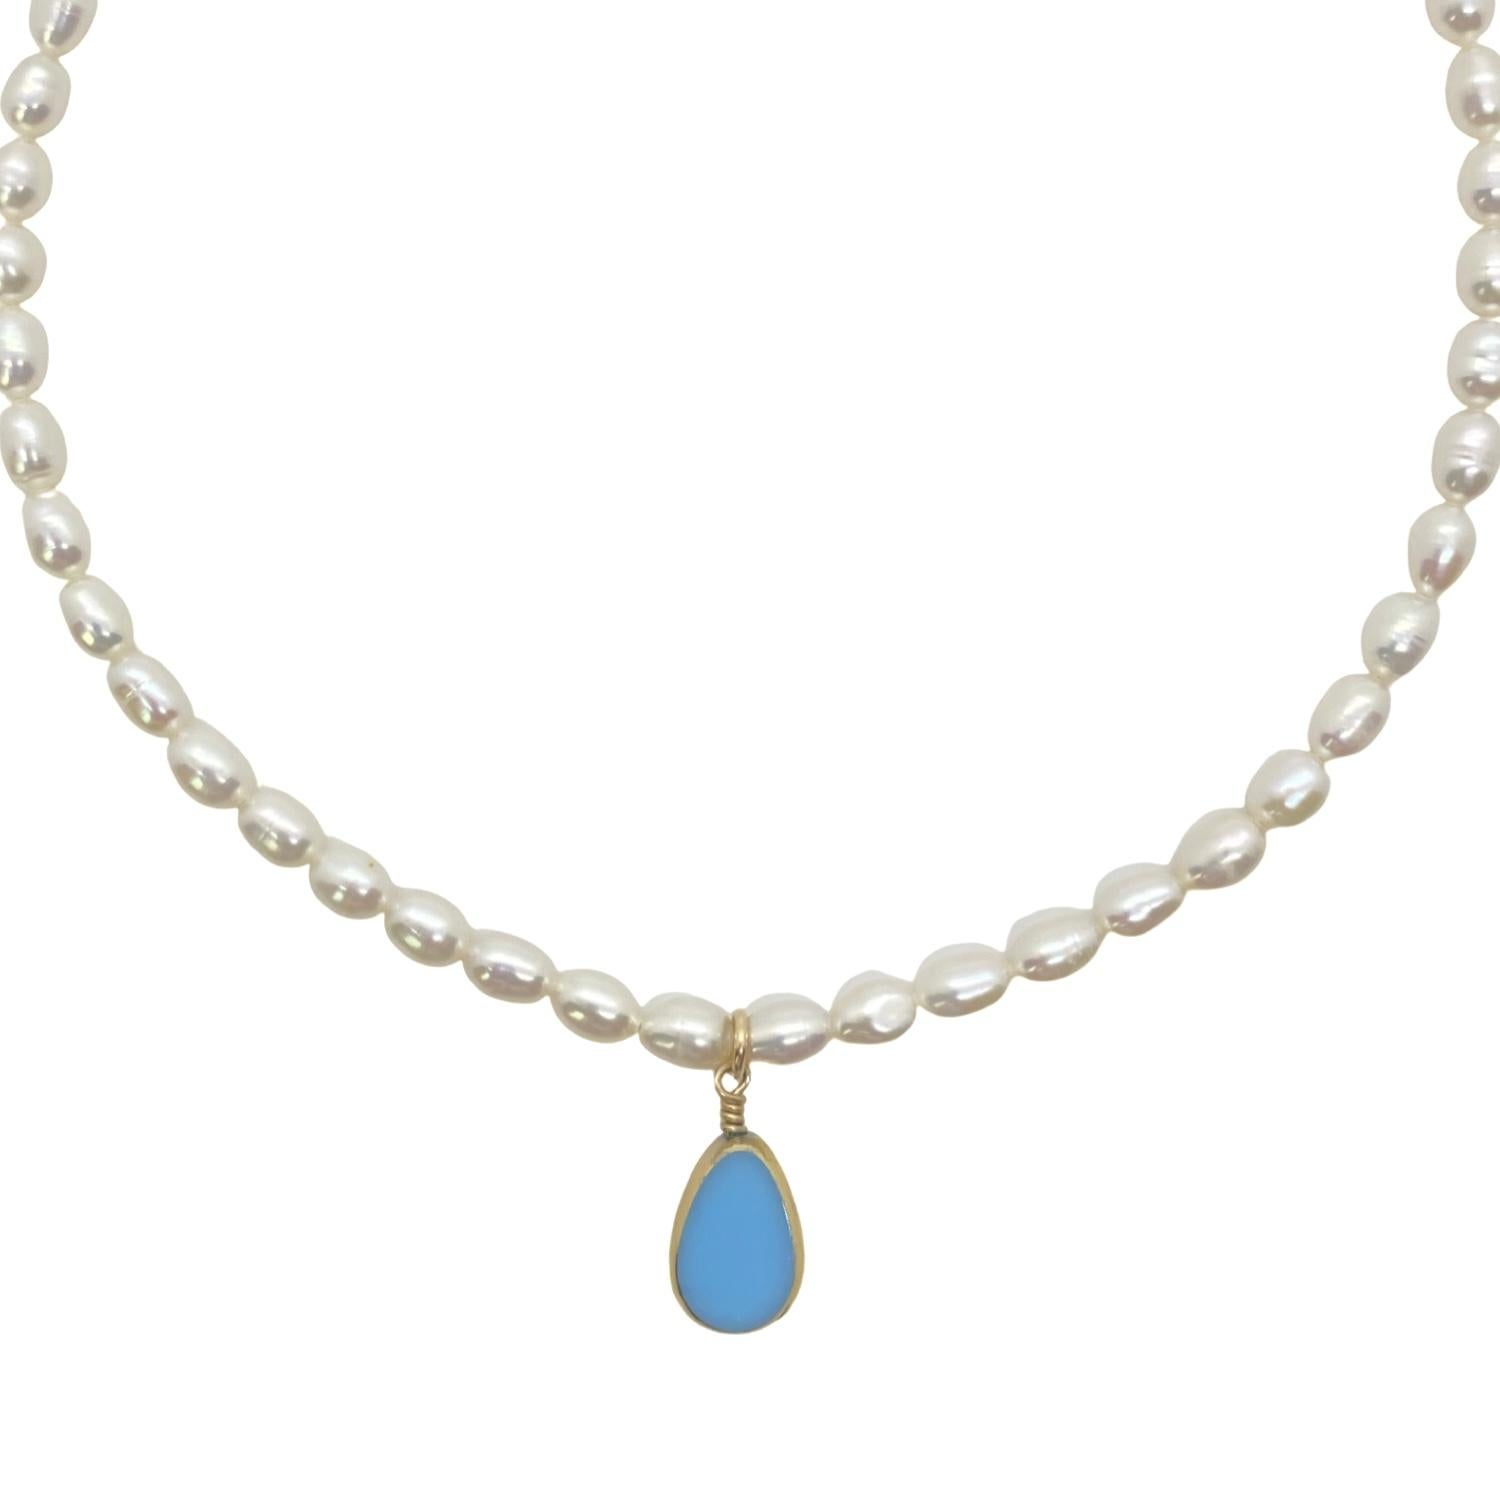 Une perle de verre rouge vintage allemande bordée d'or 24K est suspendue à des perles d'eau douce de 5 à 6 mm. Le collier est terminé par des métaux et un fermoir en or 14K. Le collier est réglable de 15 à 17 pouces.

La perle de verre vintage